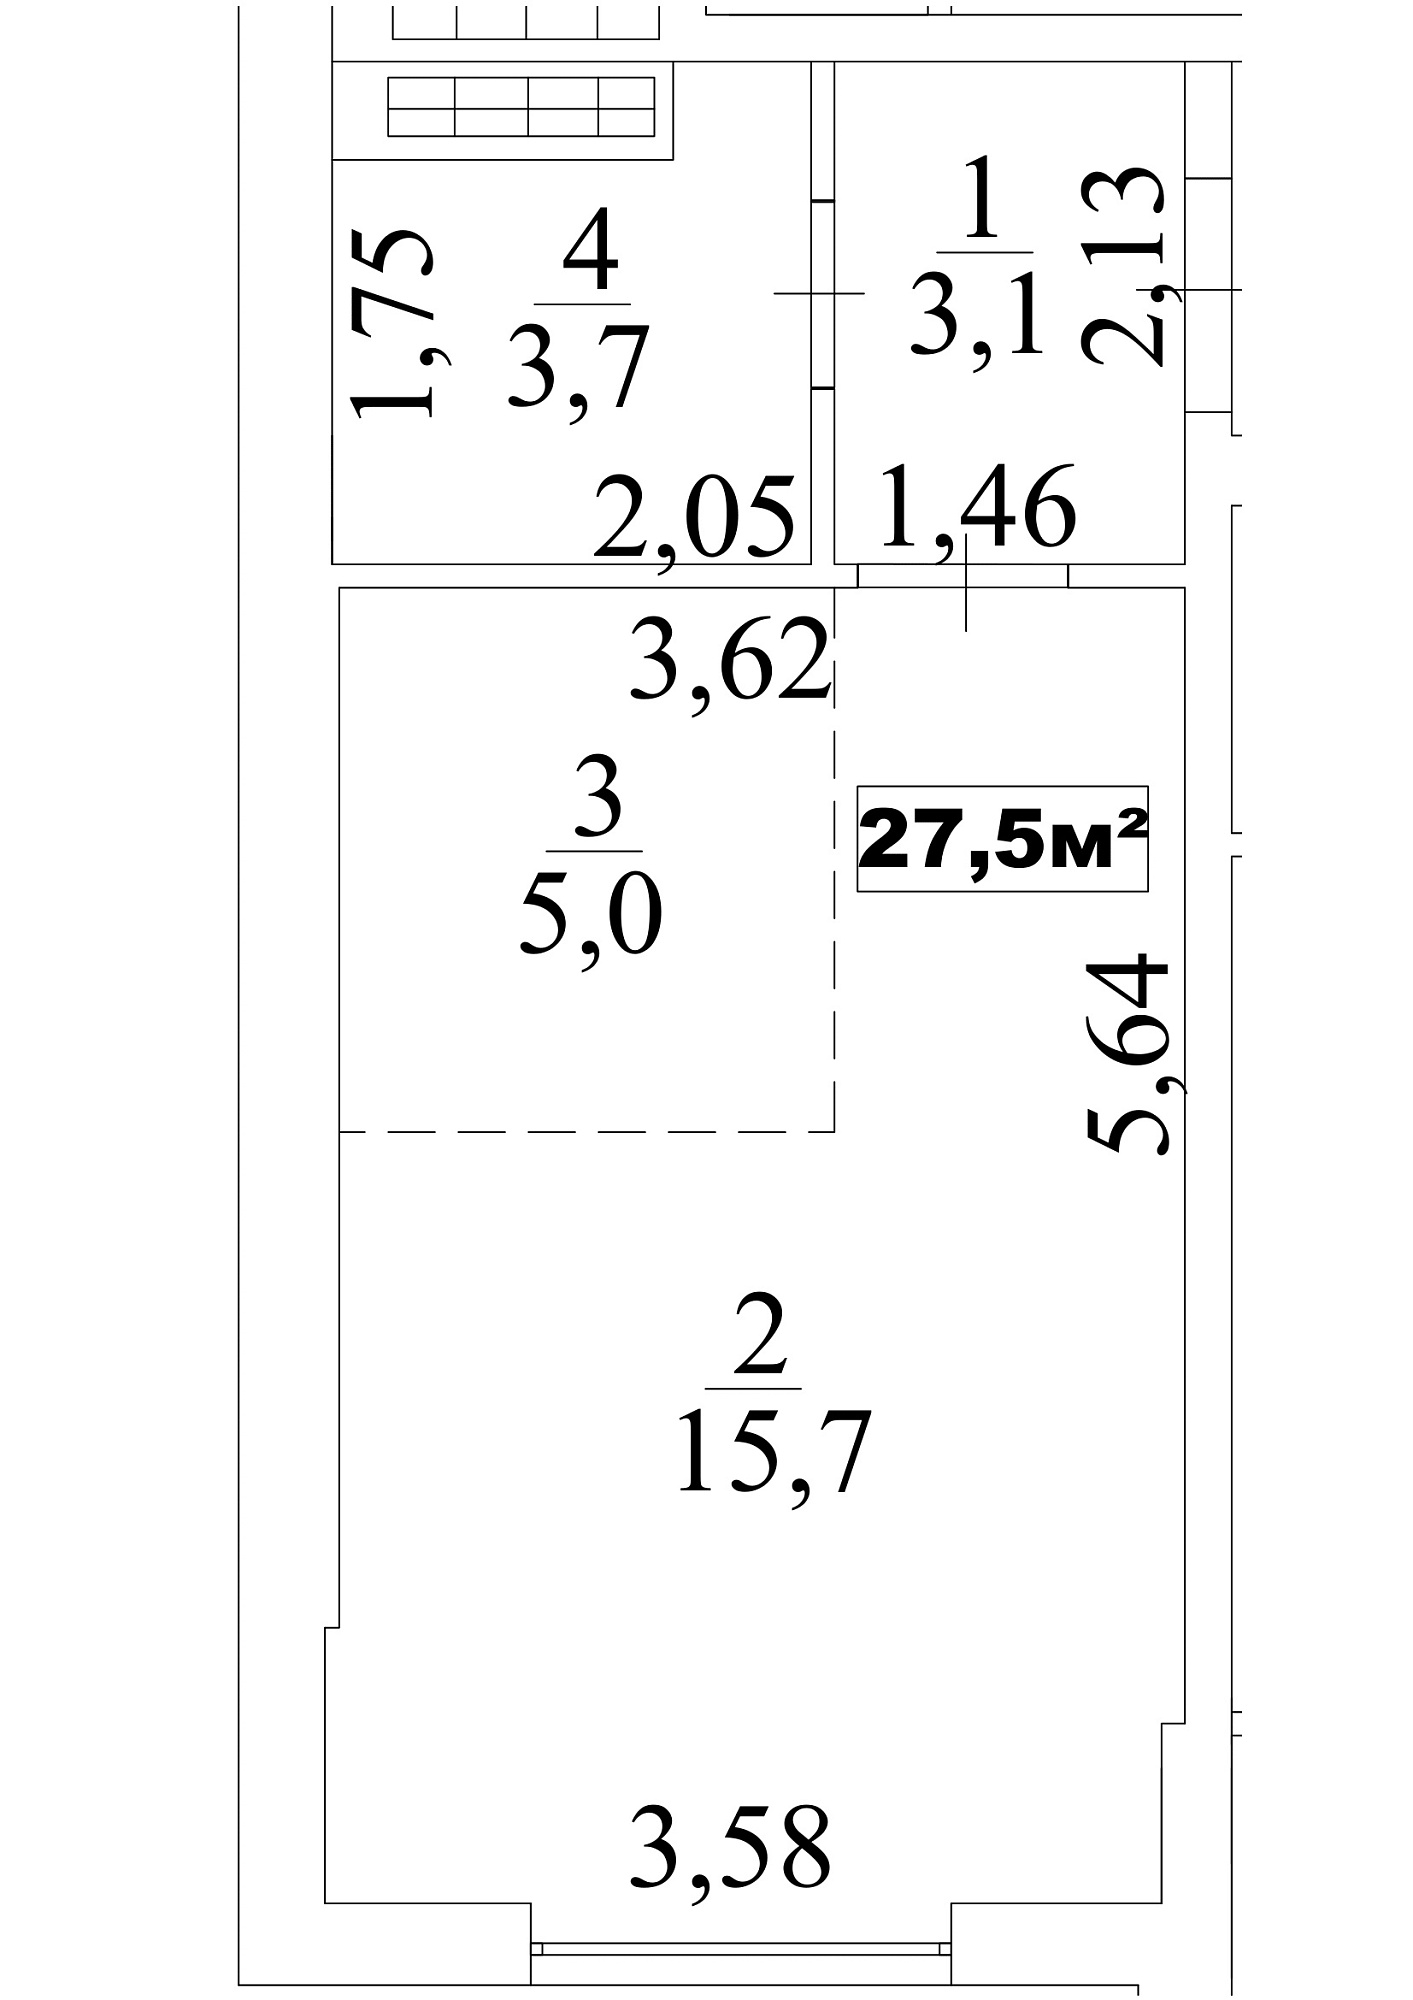 Планування Smart-квартира площею 27.5м2, AB-10-05/0039а.